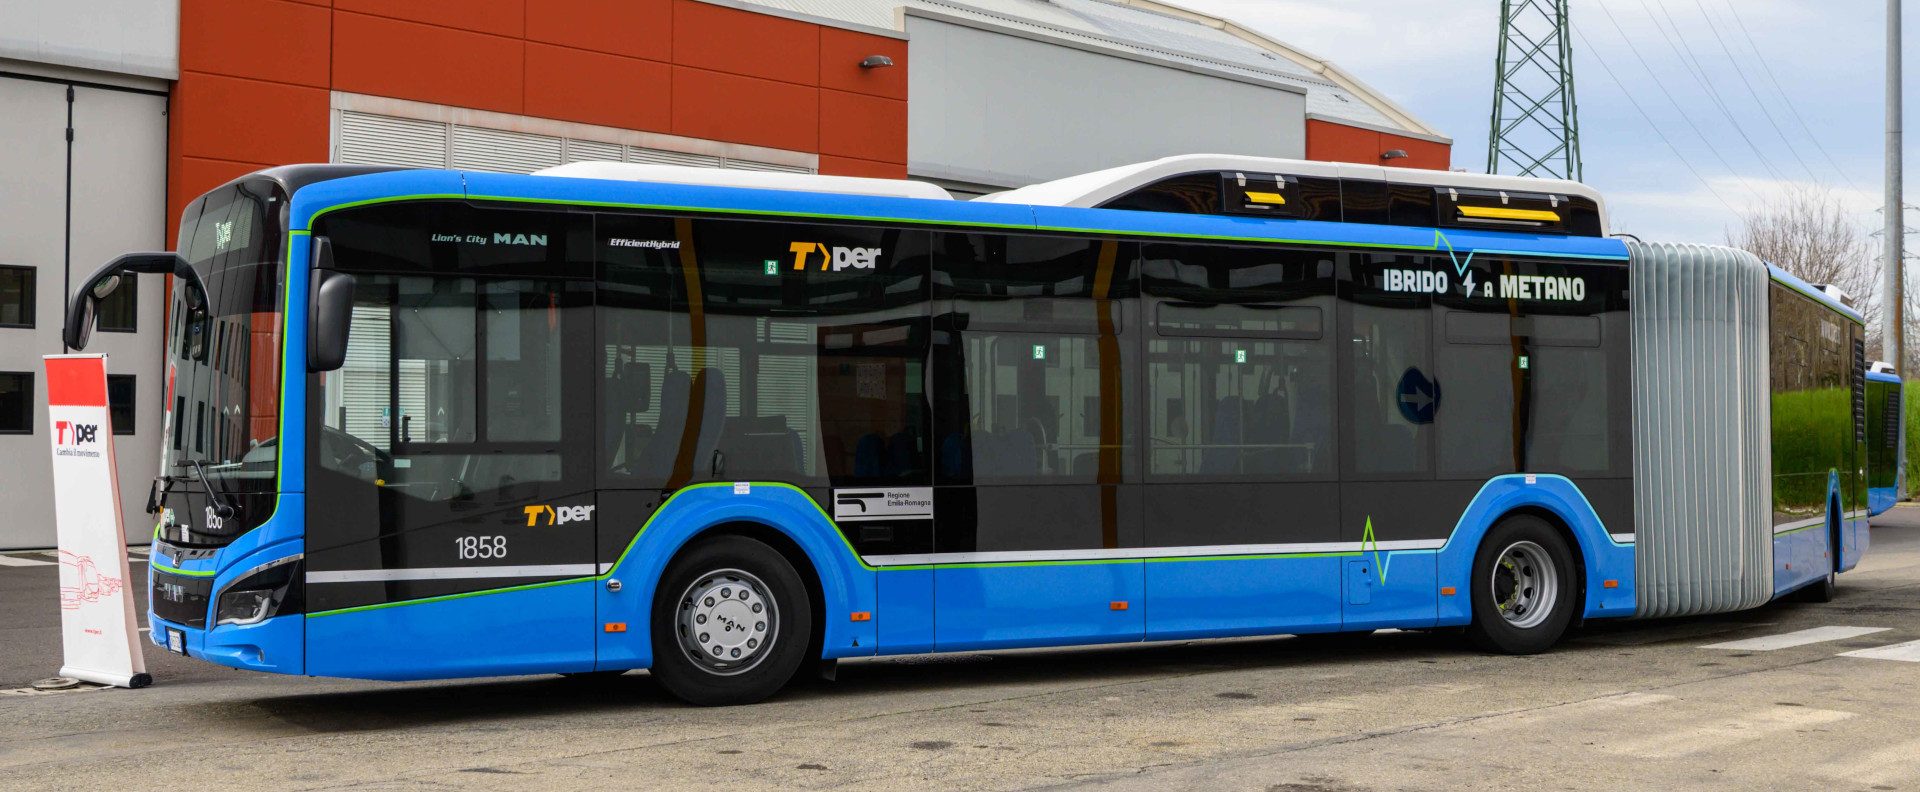 Immagine nuovo autobus